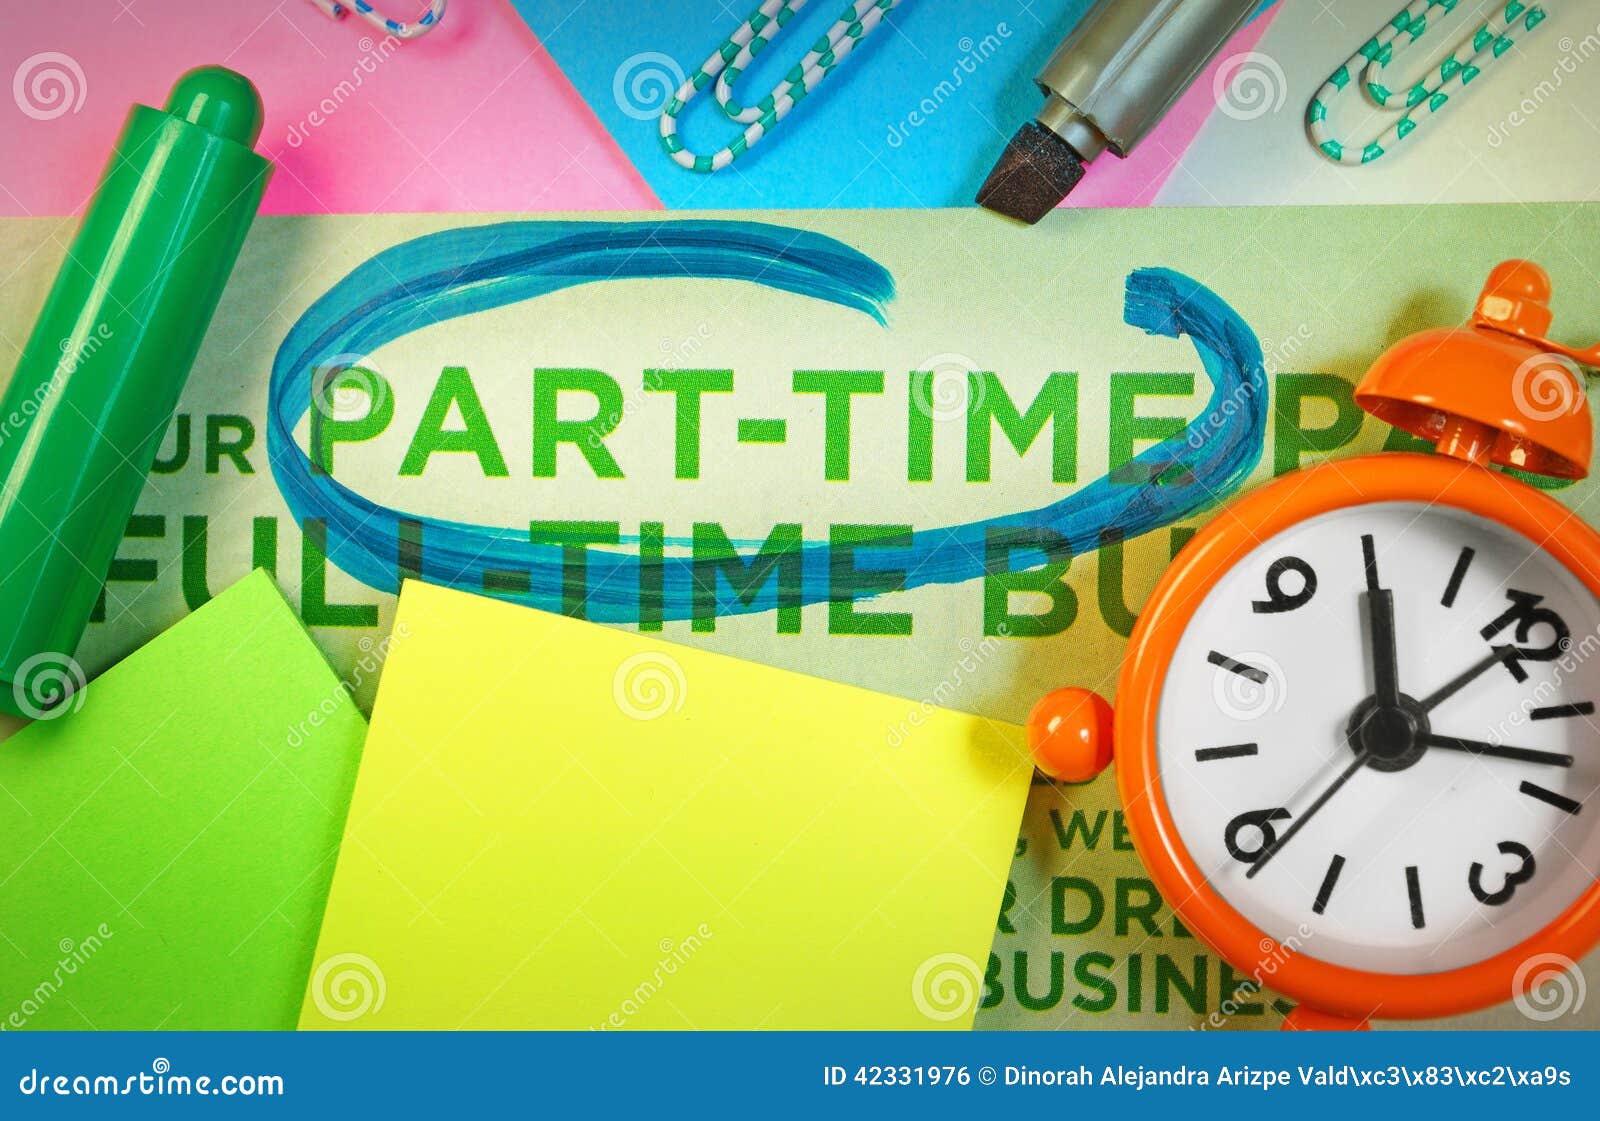 part time business concept